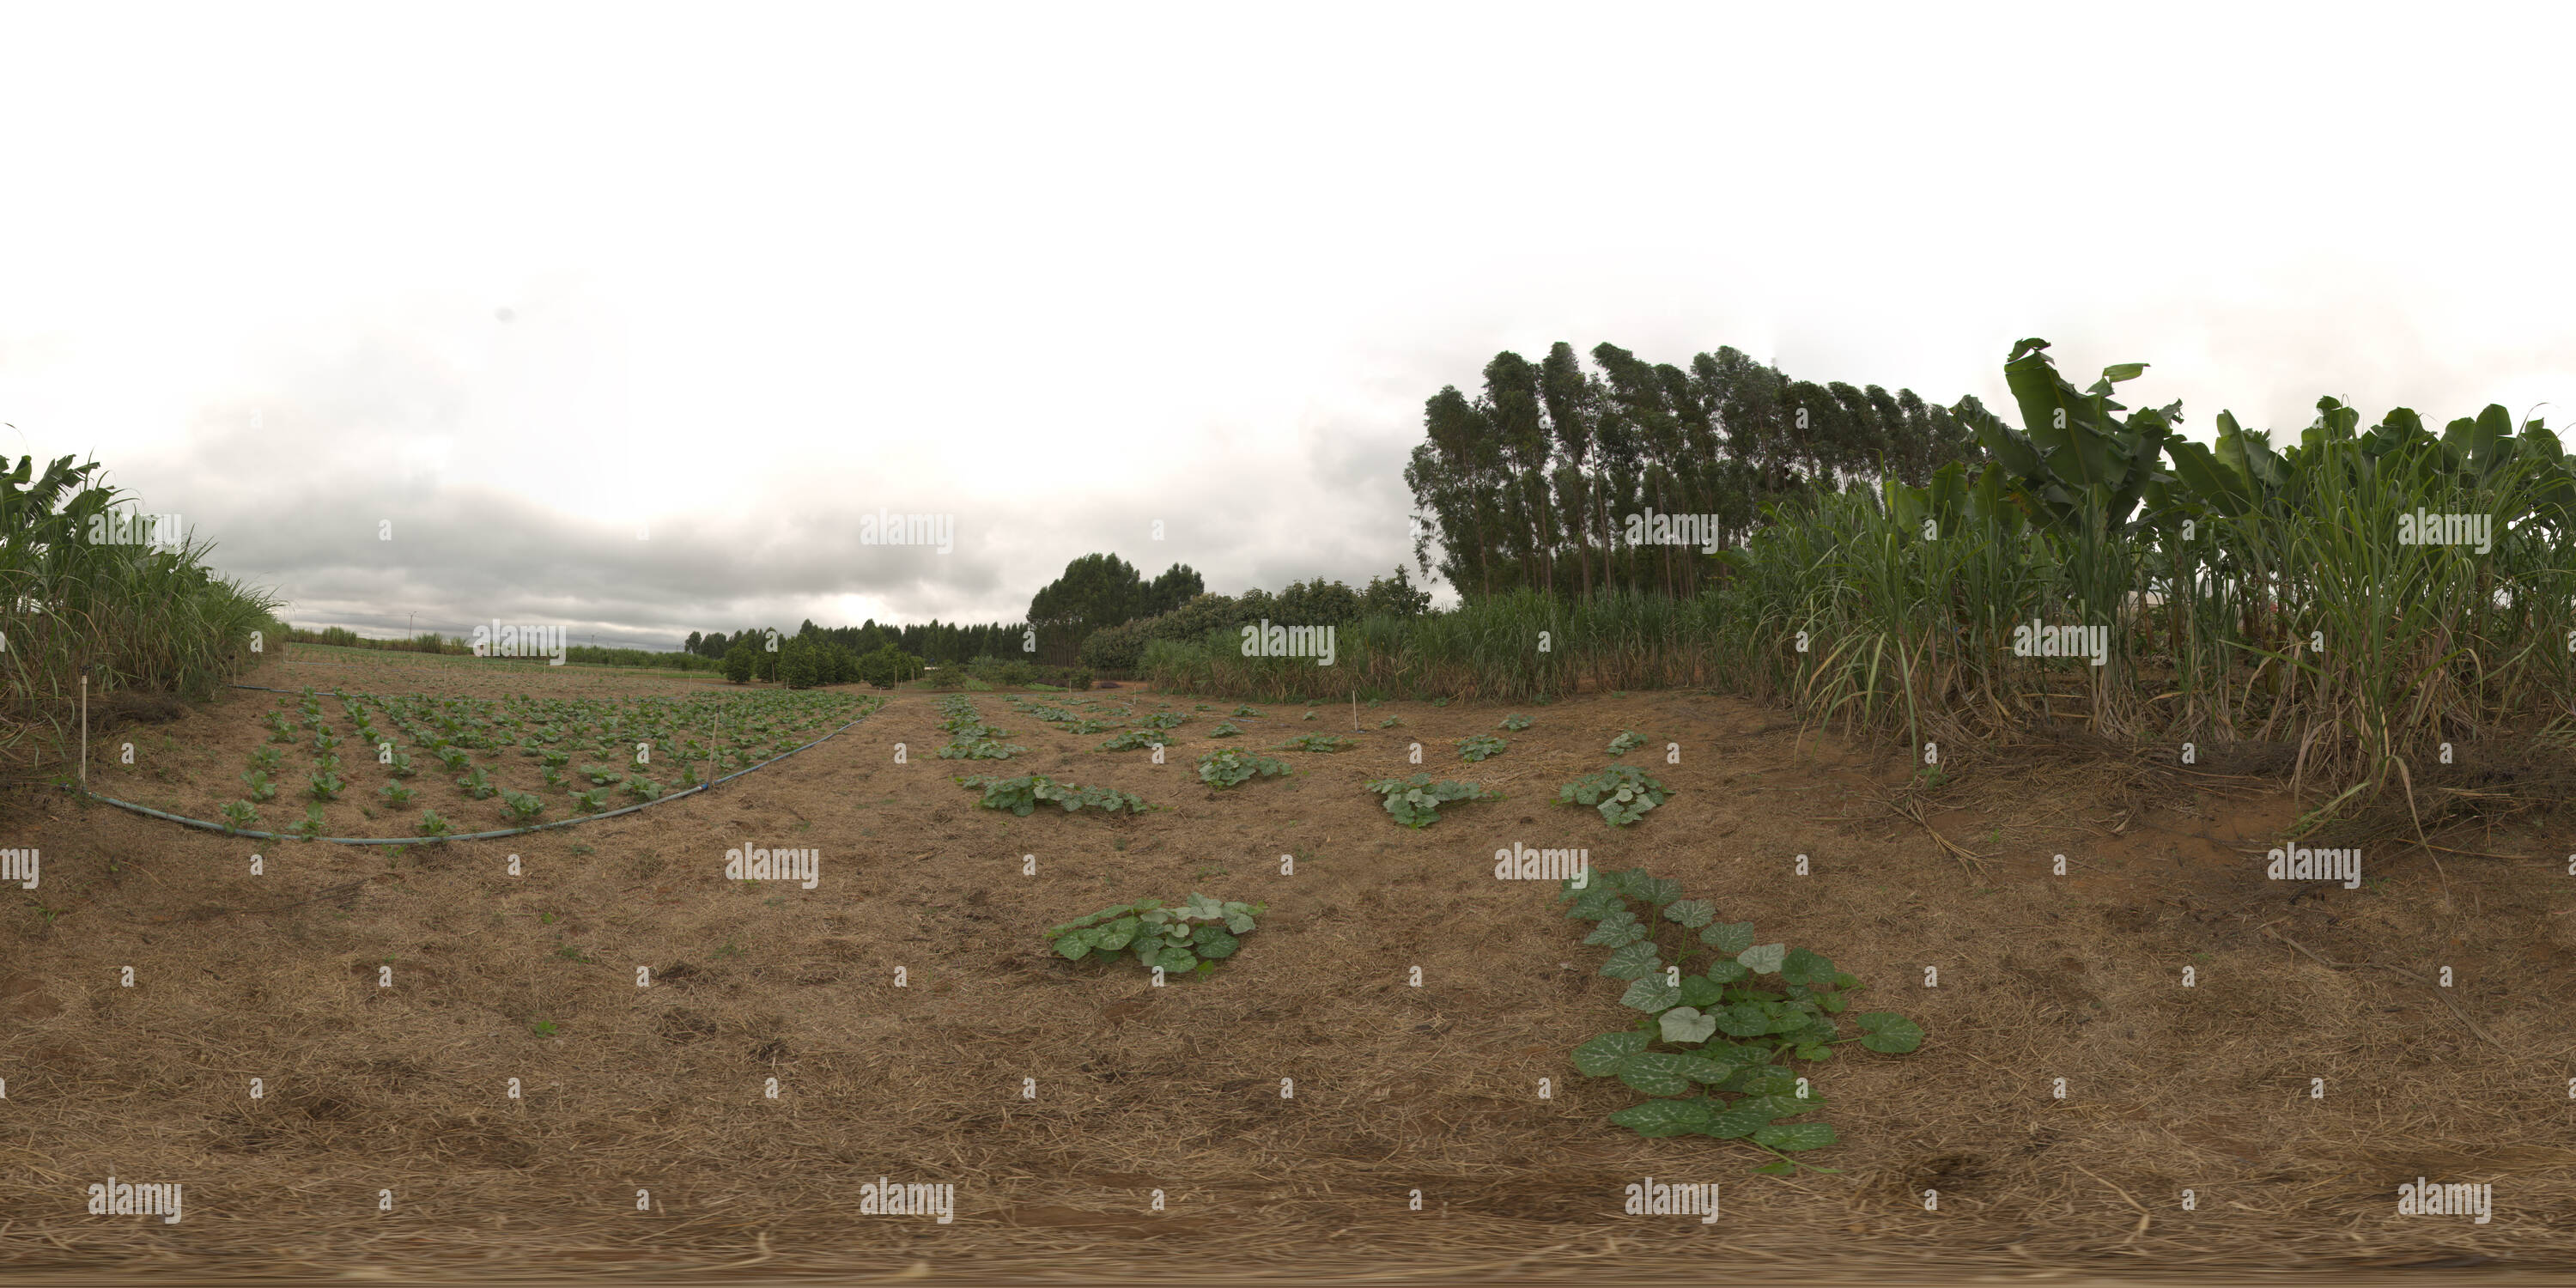 360 degree panoramic view of Sistema orgânico de plantio direto em hortaliças irrigado